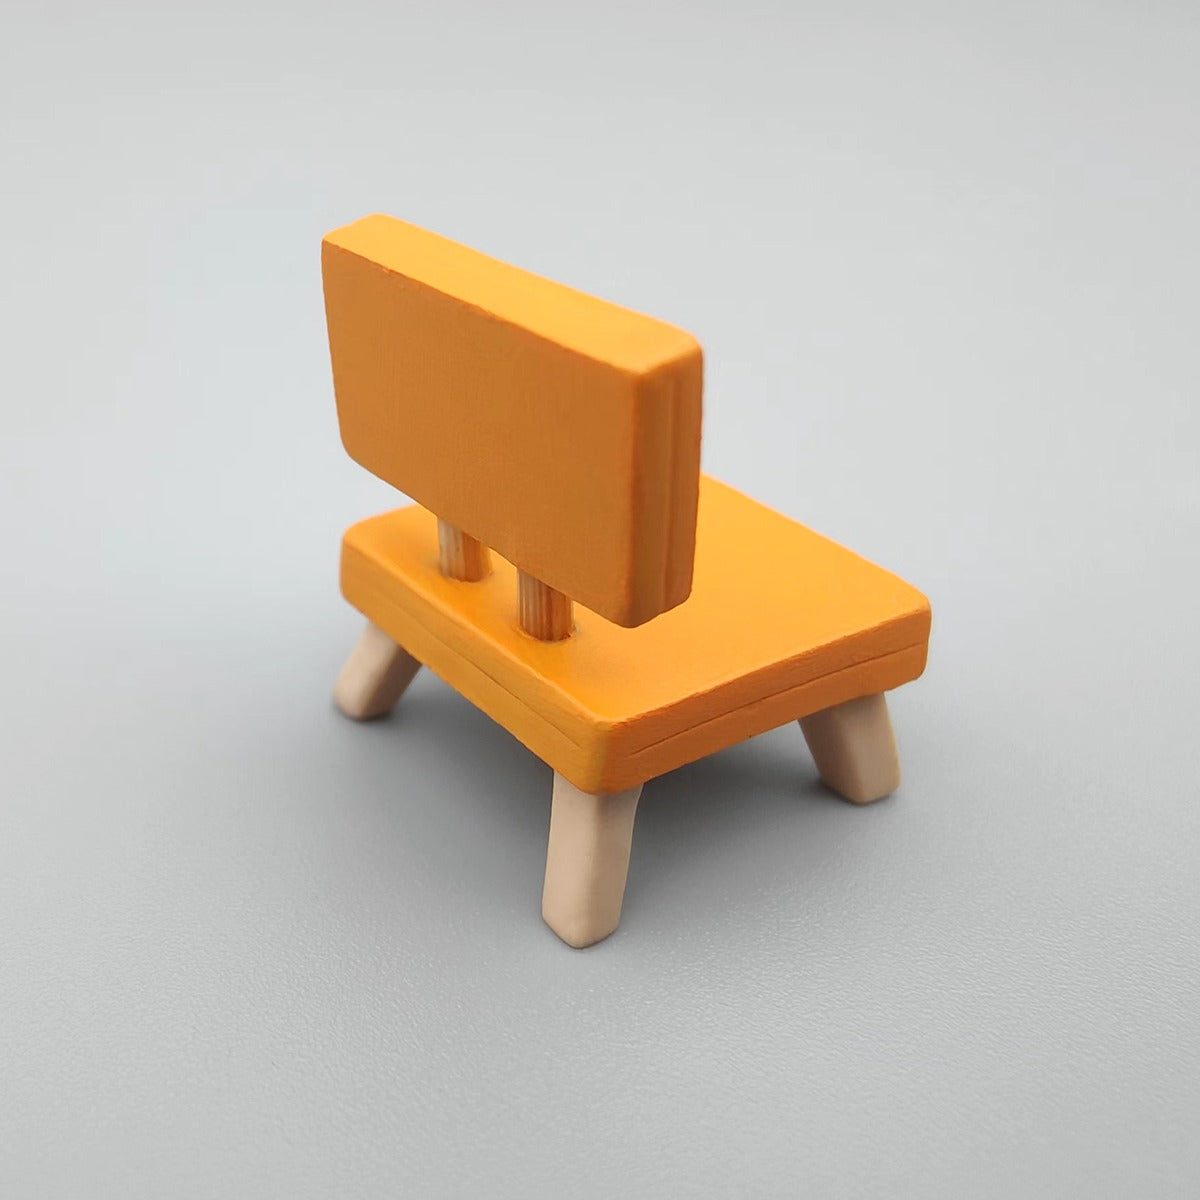 3D Wooden Chair Artisan Keycap